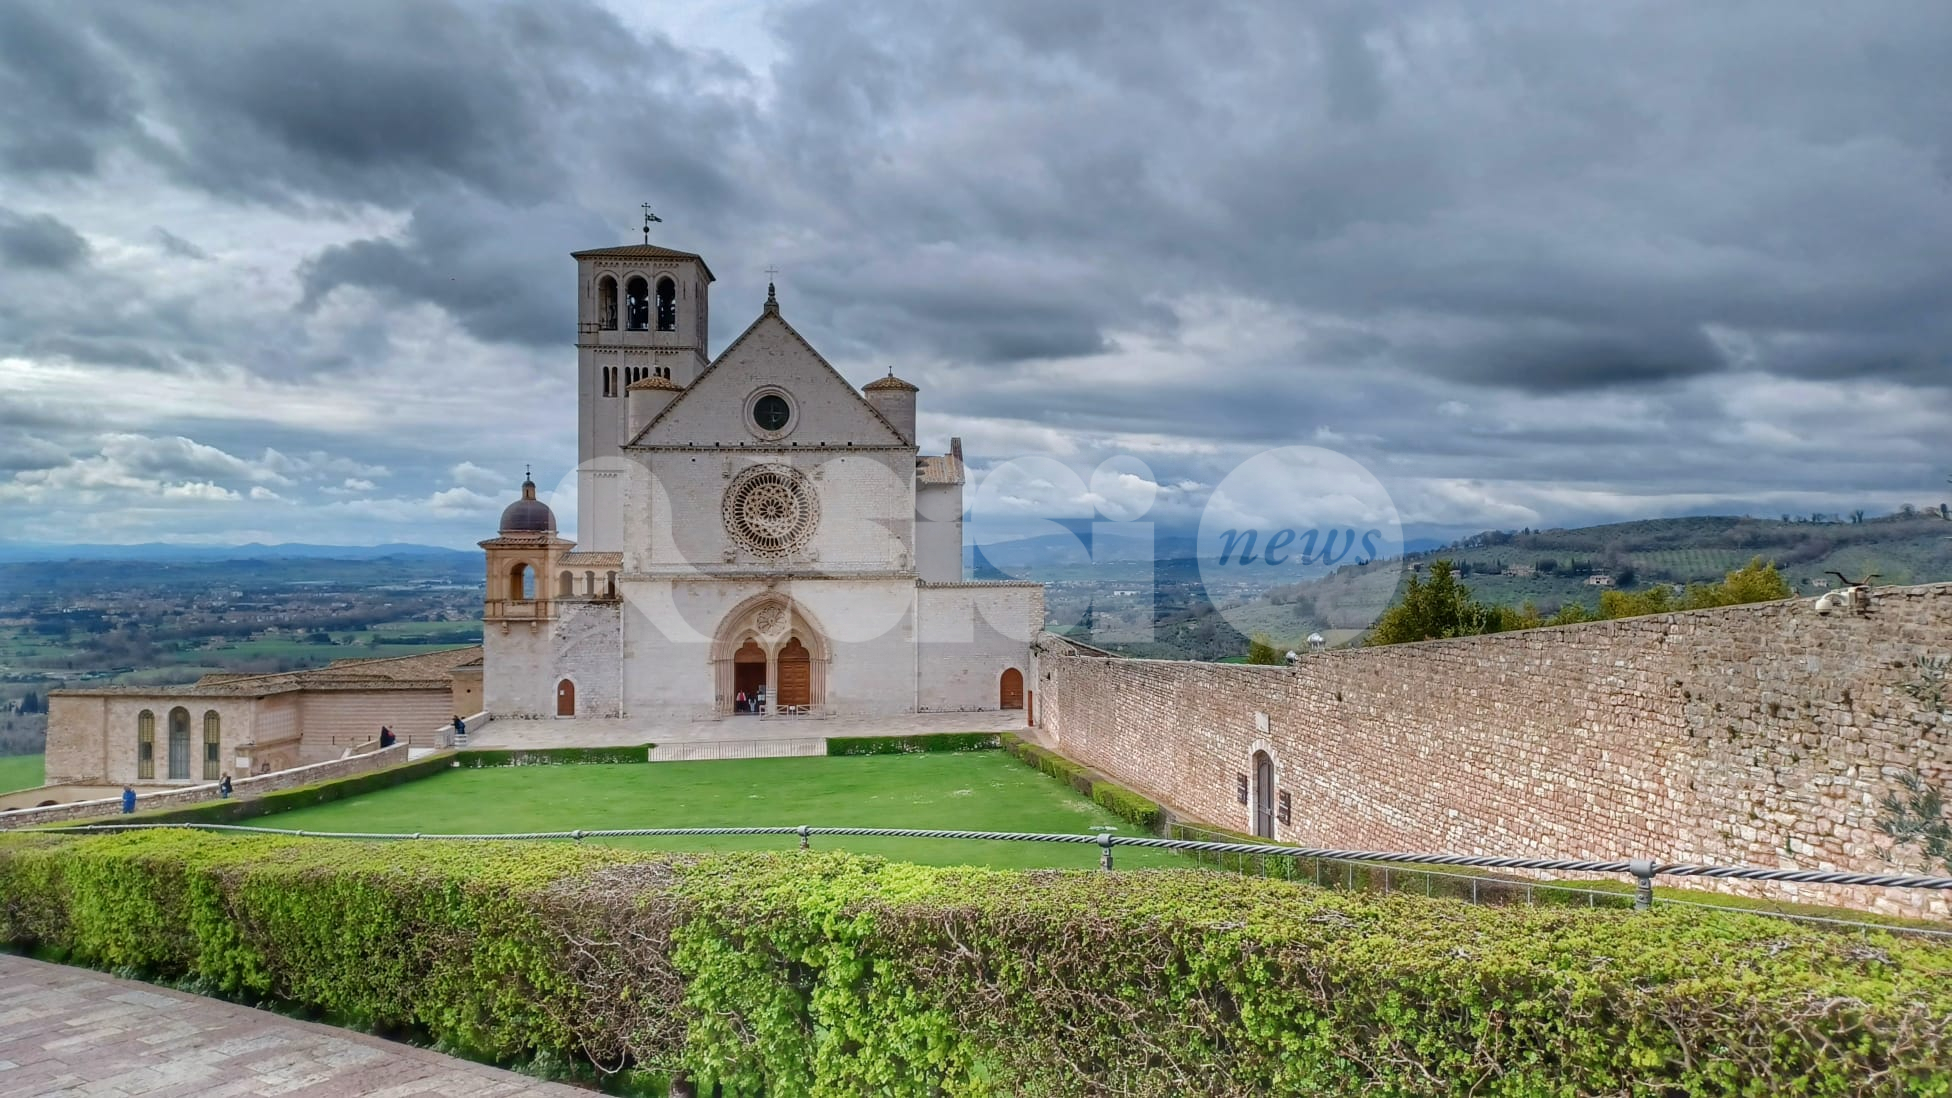 Maria Falcone in visita alla Basilica di San Francesco domani 28 aprile